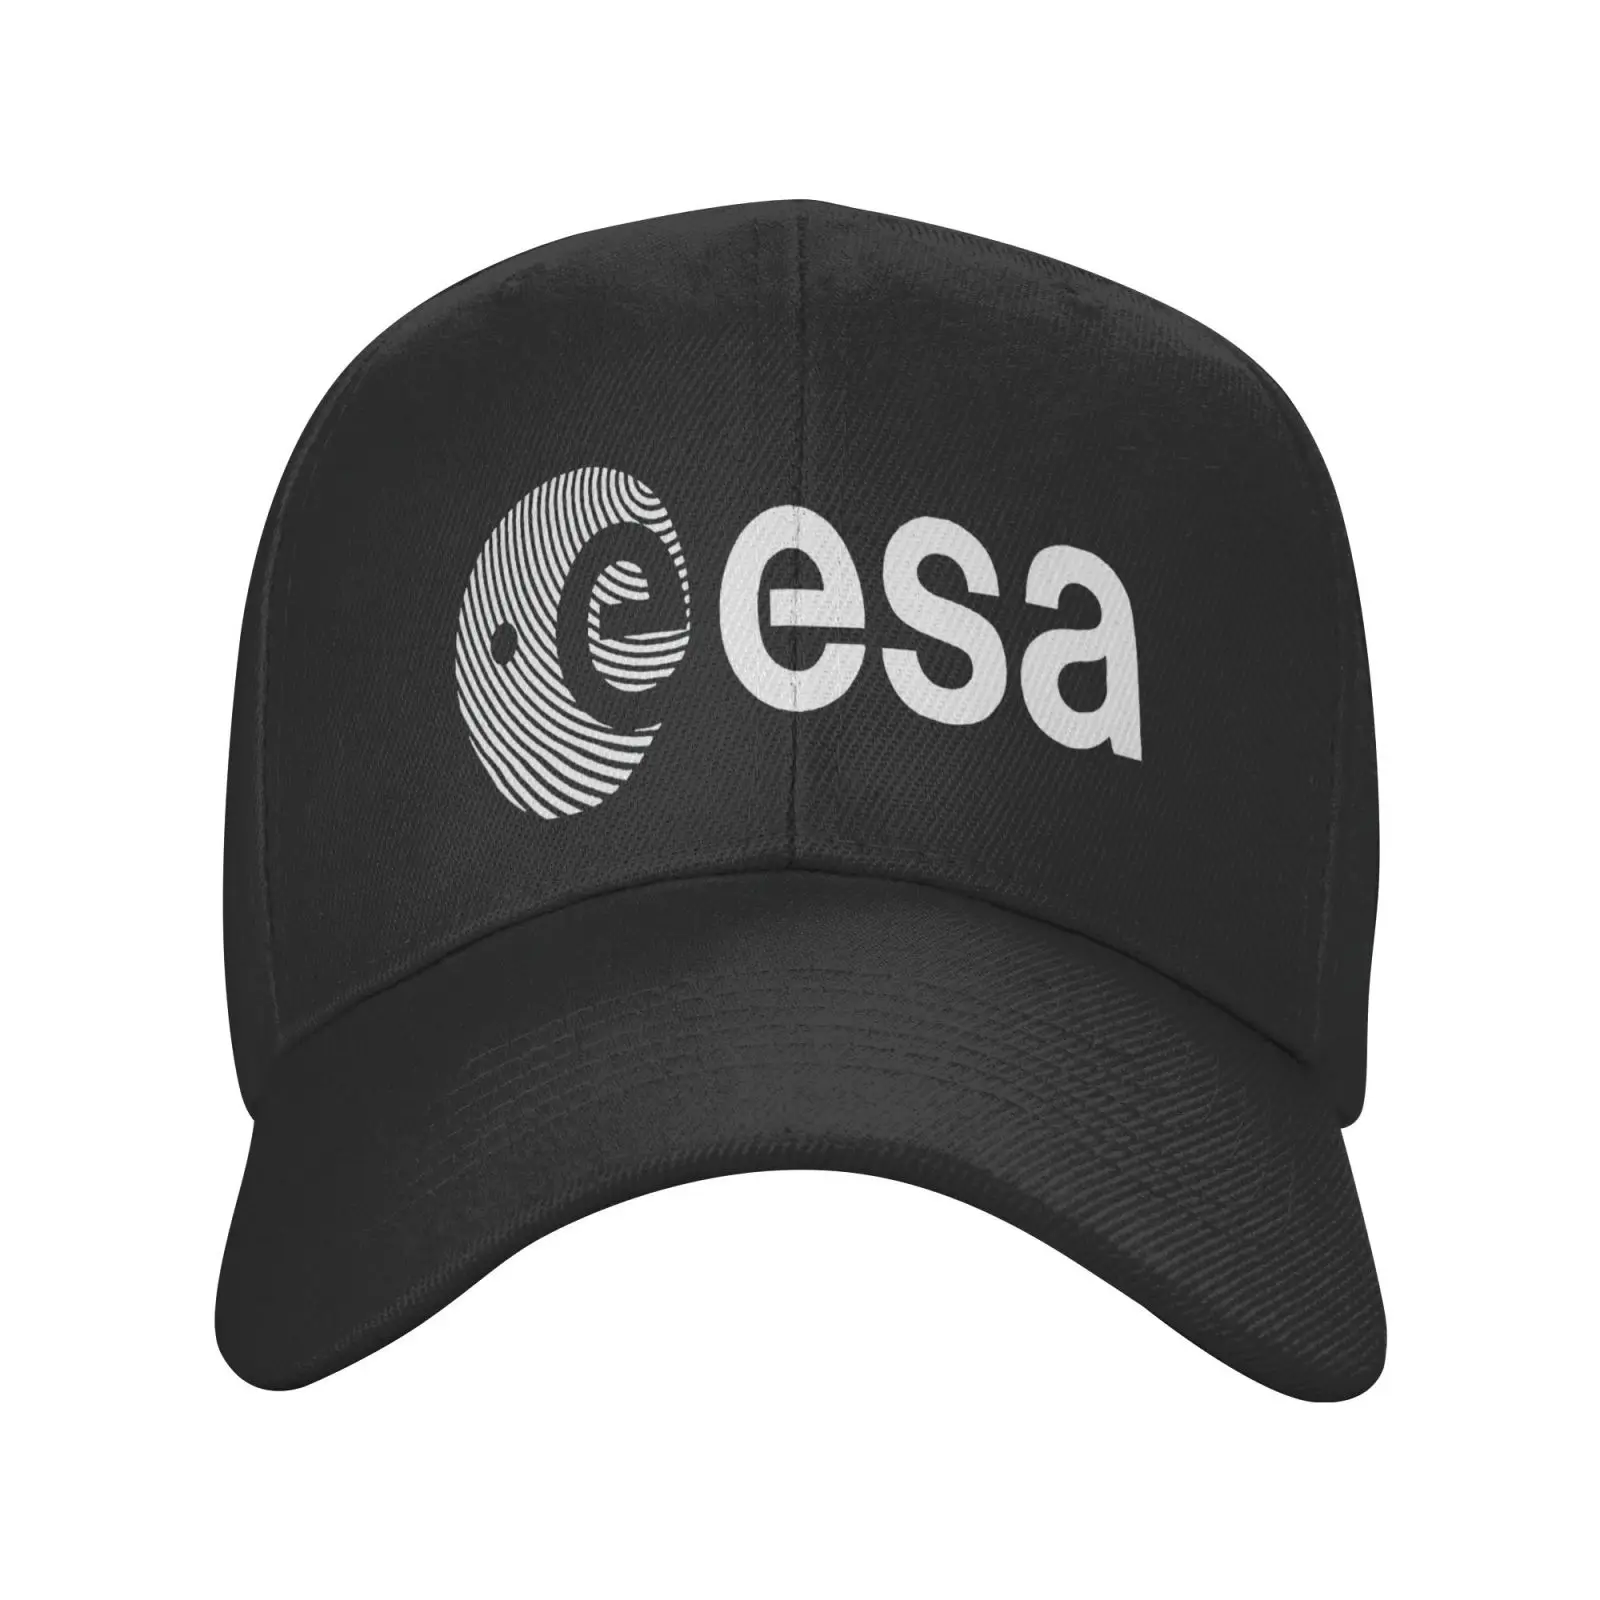 Европейская бейсболка Esa с символами космического агентства для мужчин и женщин